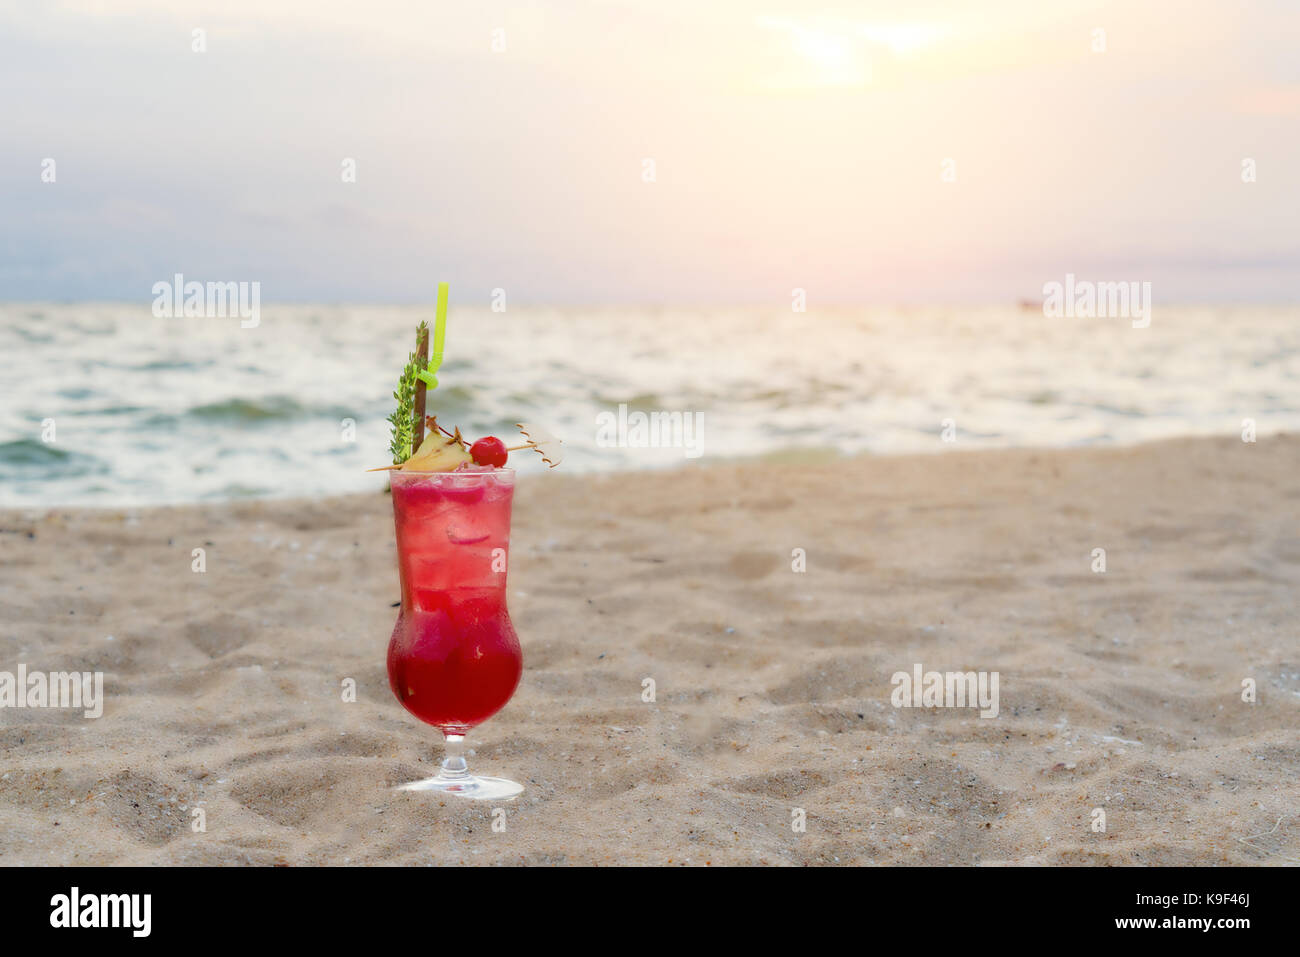 Red cocktail drink sulla sabbia in spiaggia in twilight sea & sky background. estate, vacanze, viaggi e vacanze concetto. Foto Stock